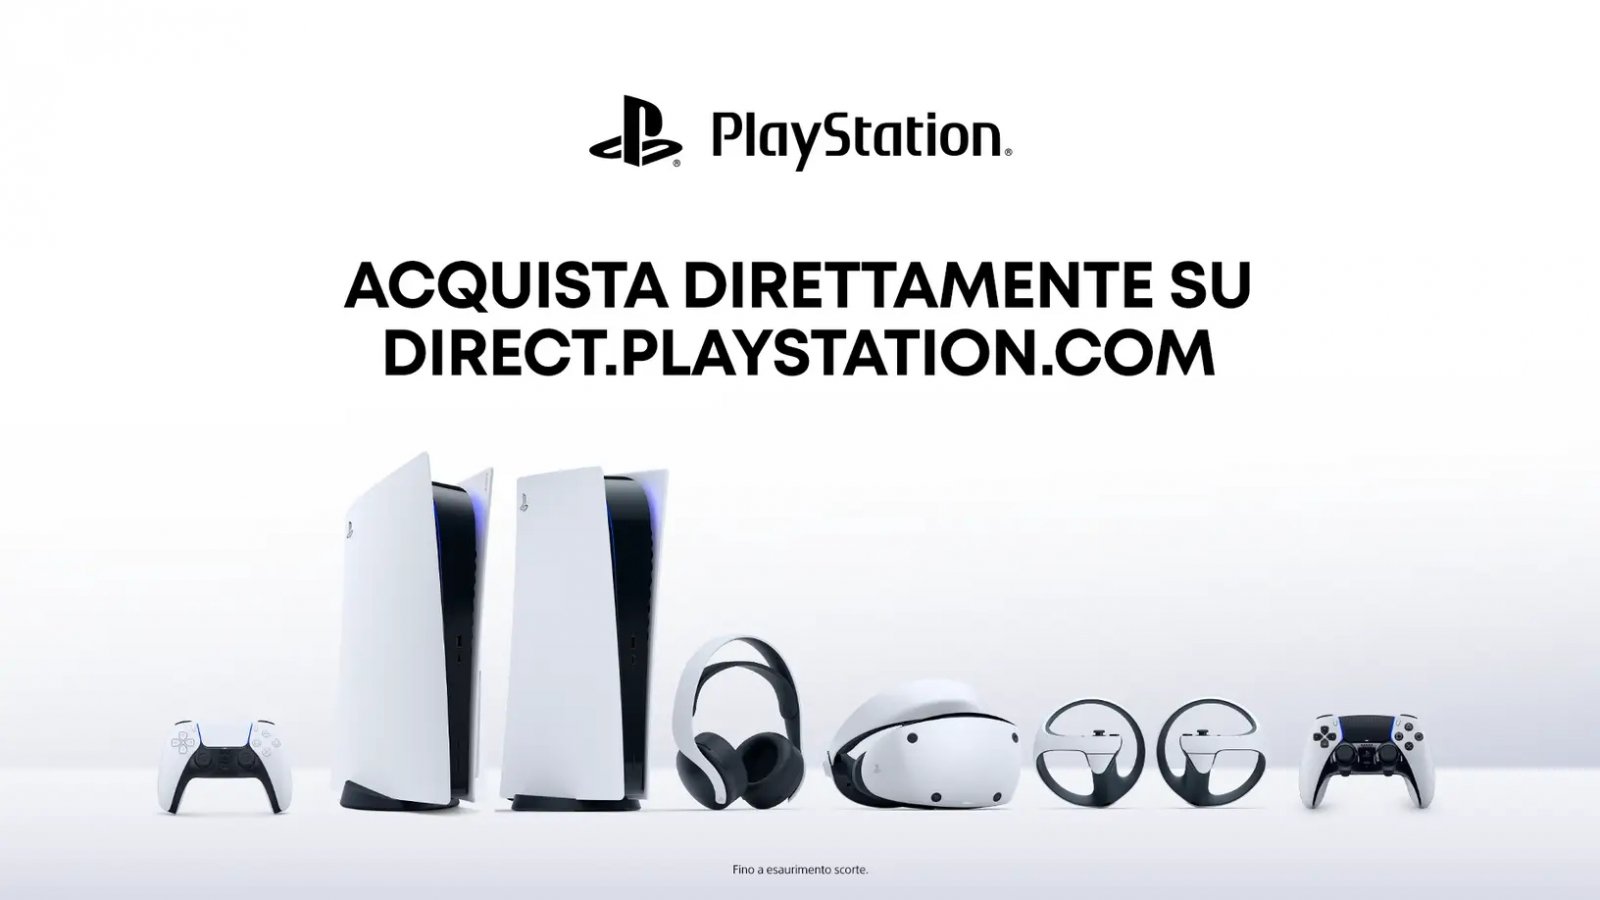 Direct.Playstation.com sbarca ufficialmente in Italia